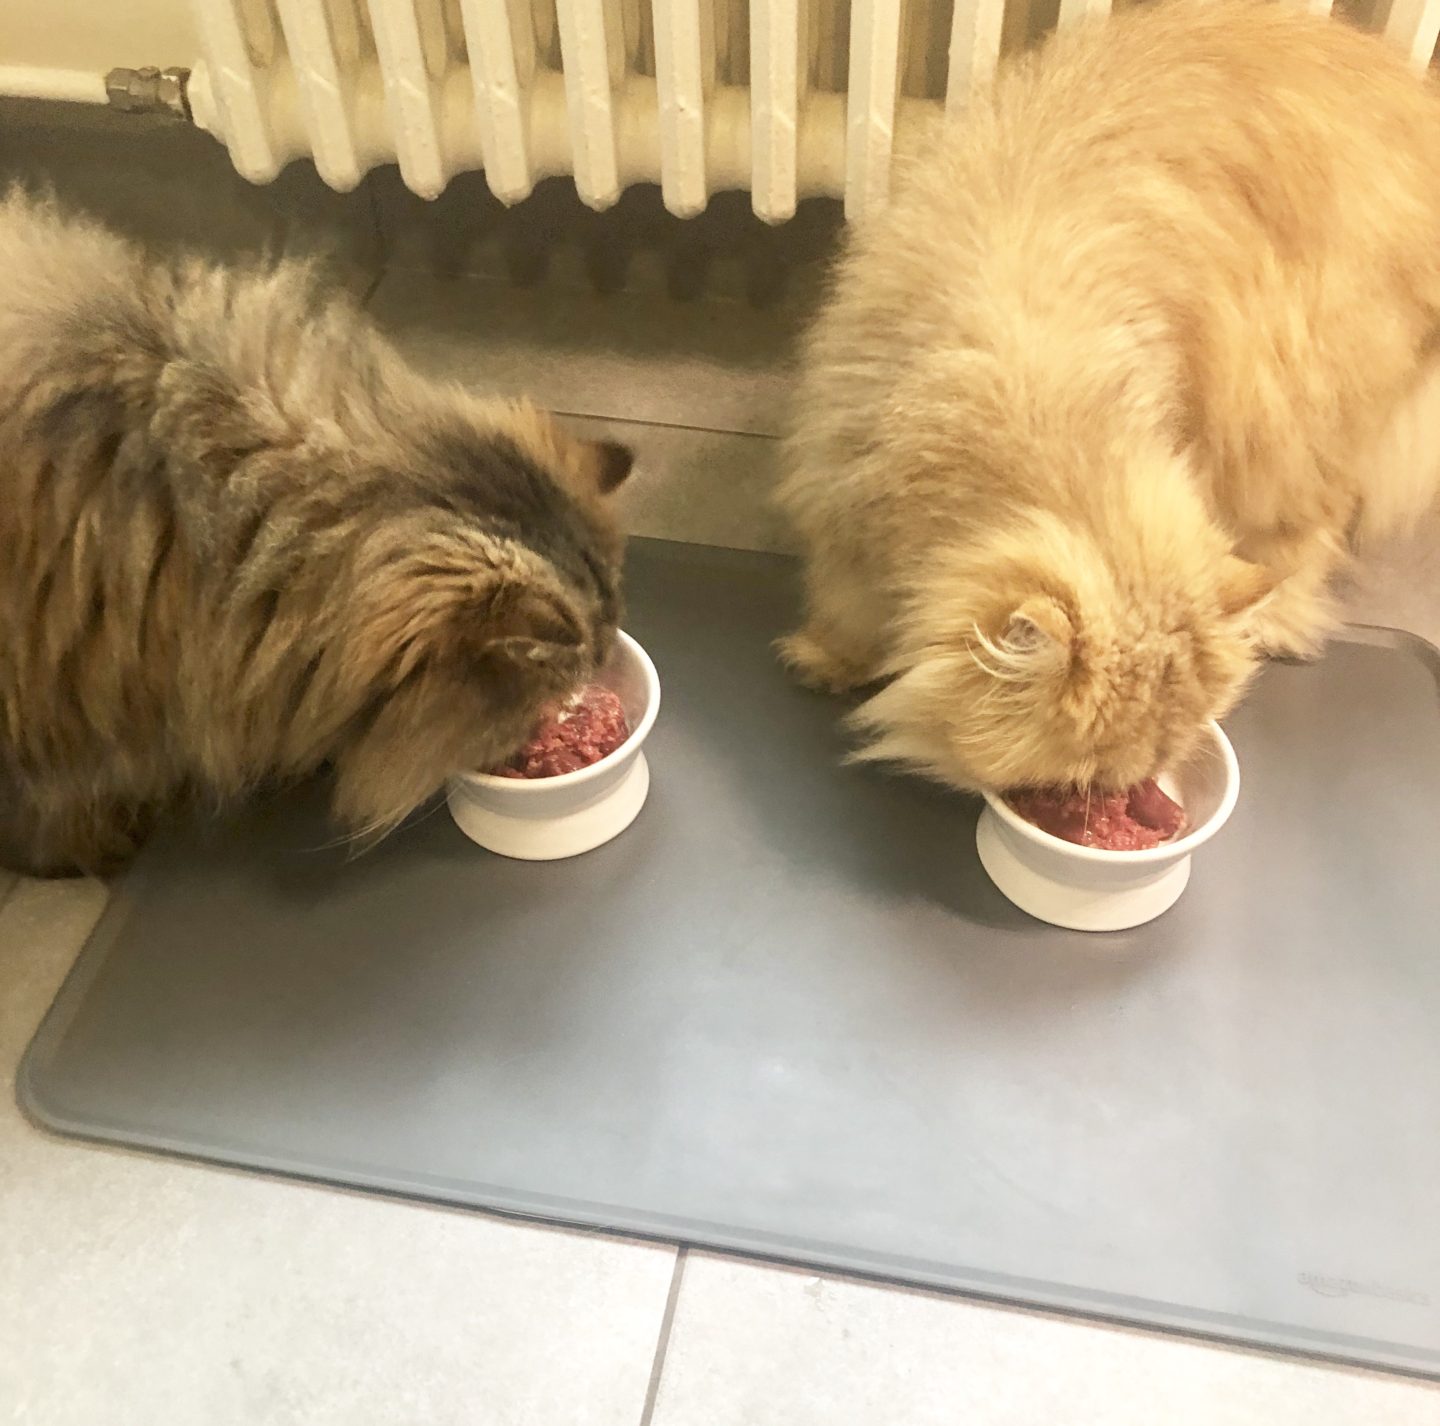 Ikea Lurvig raised cat food bowl